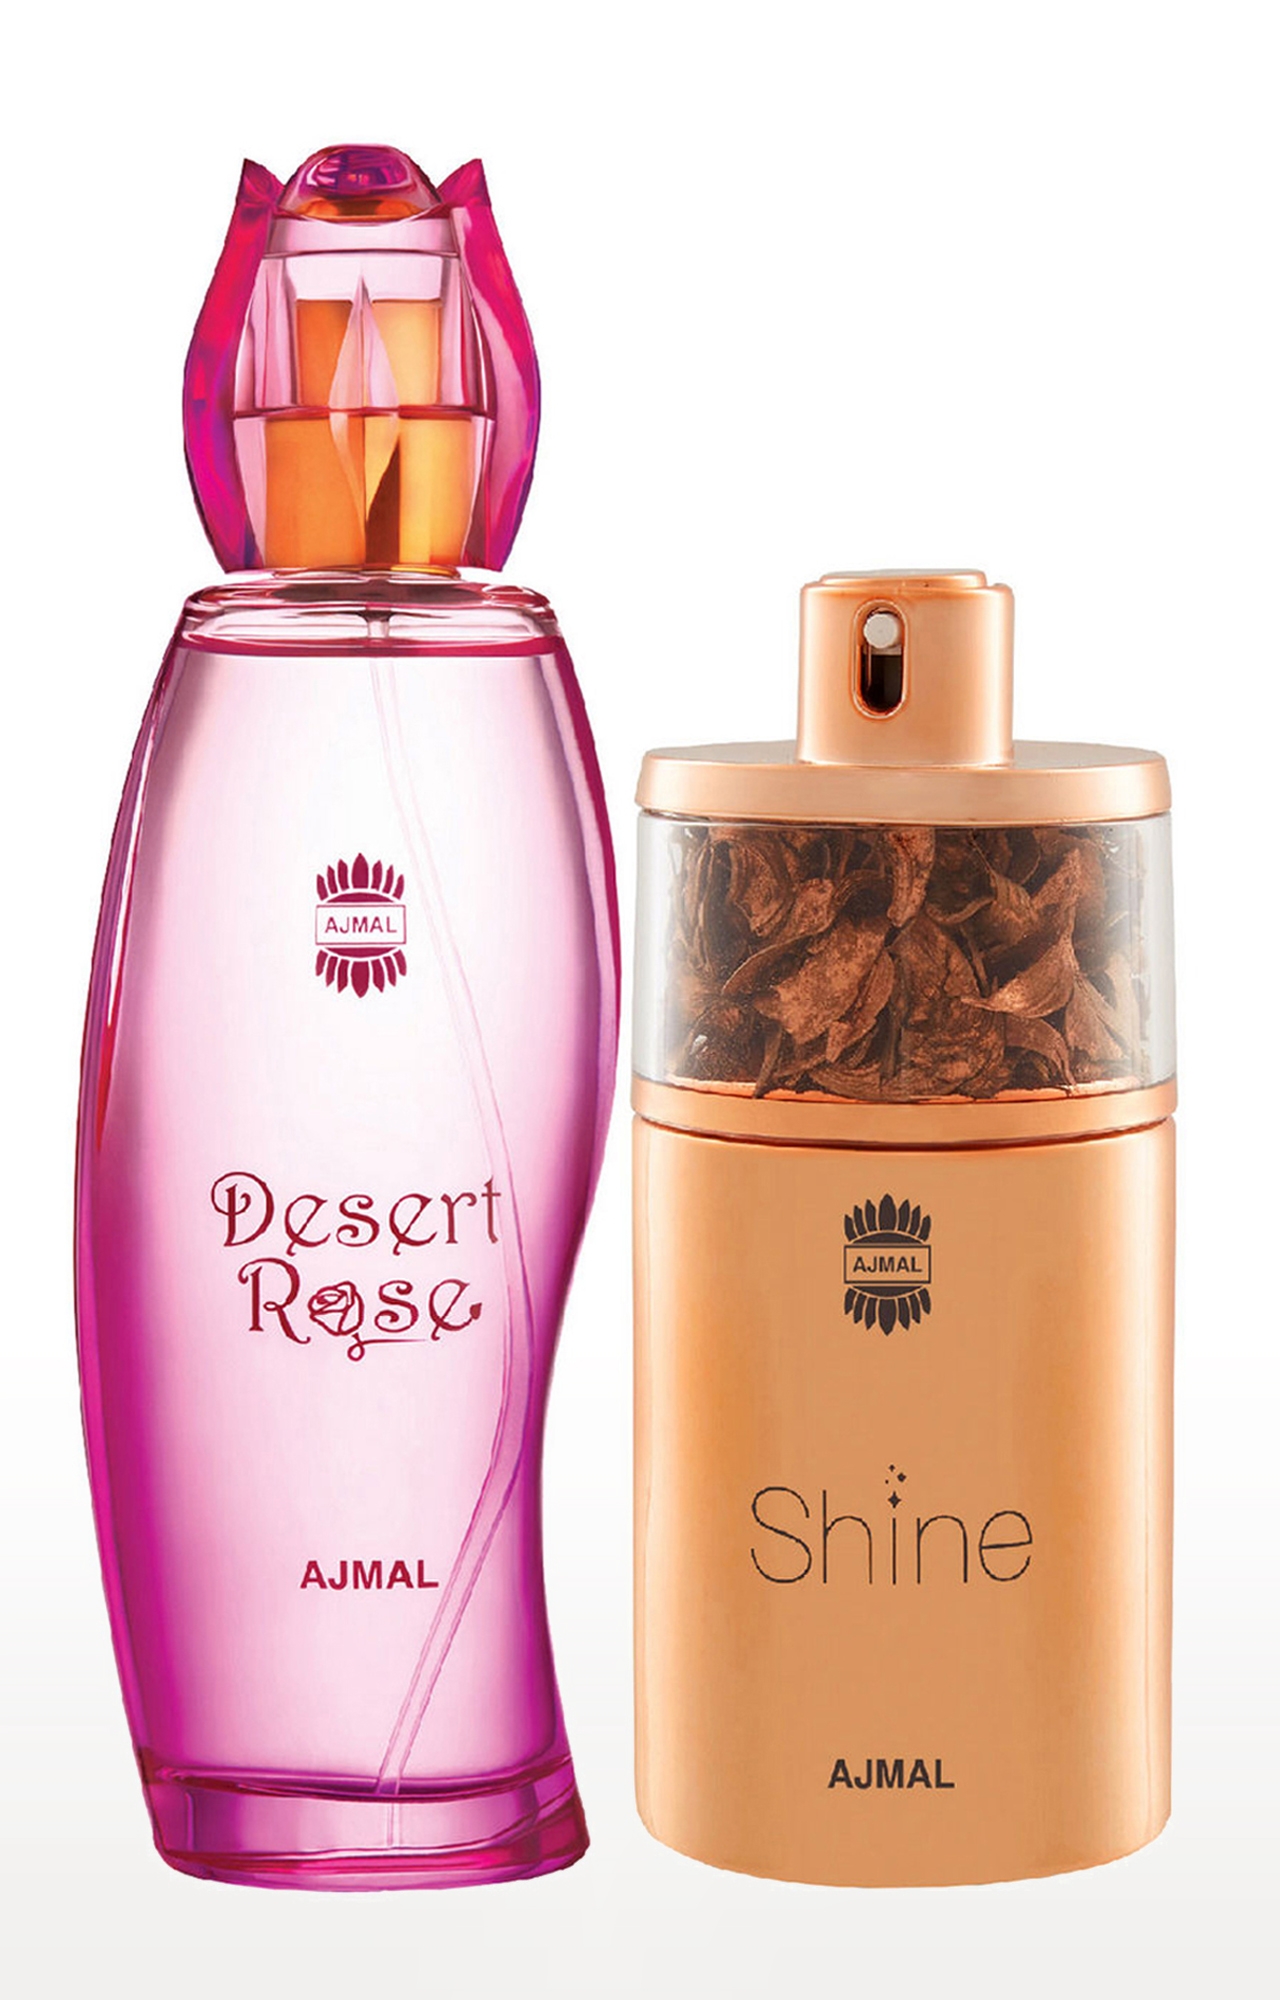 Ajmal Desert Rose EDP Oriental Perfume 100ml for Women and Shine EDP Perfume 75ml for Women